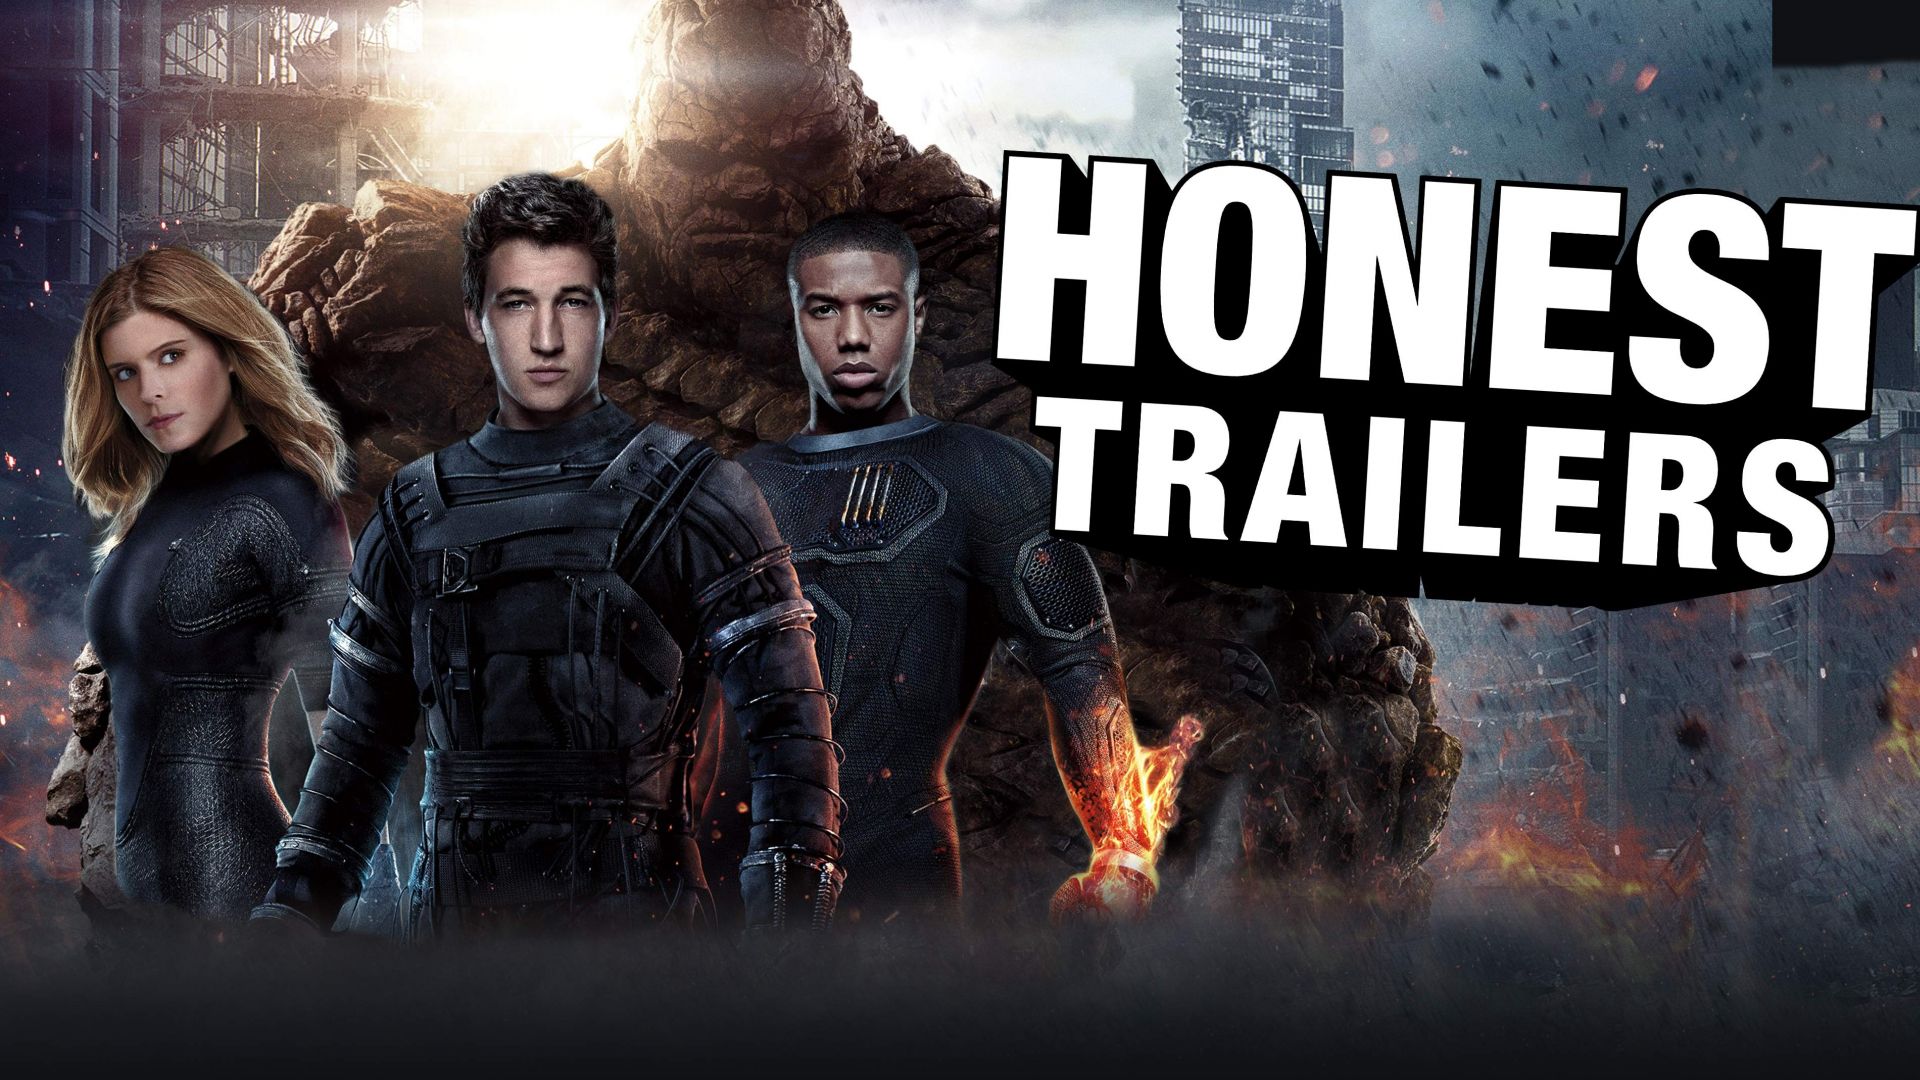 Brutal honest trailer released for Fantastic Four